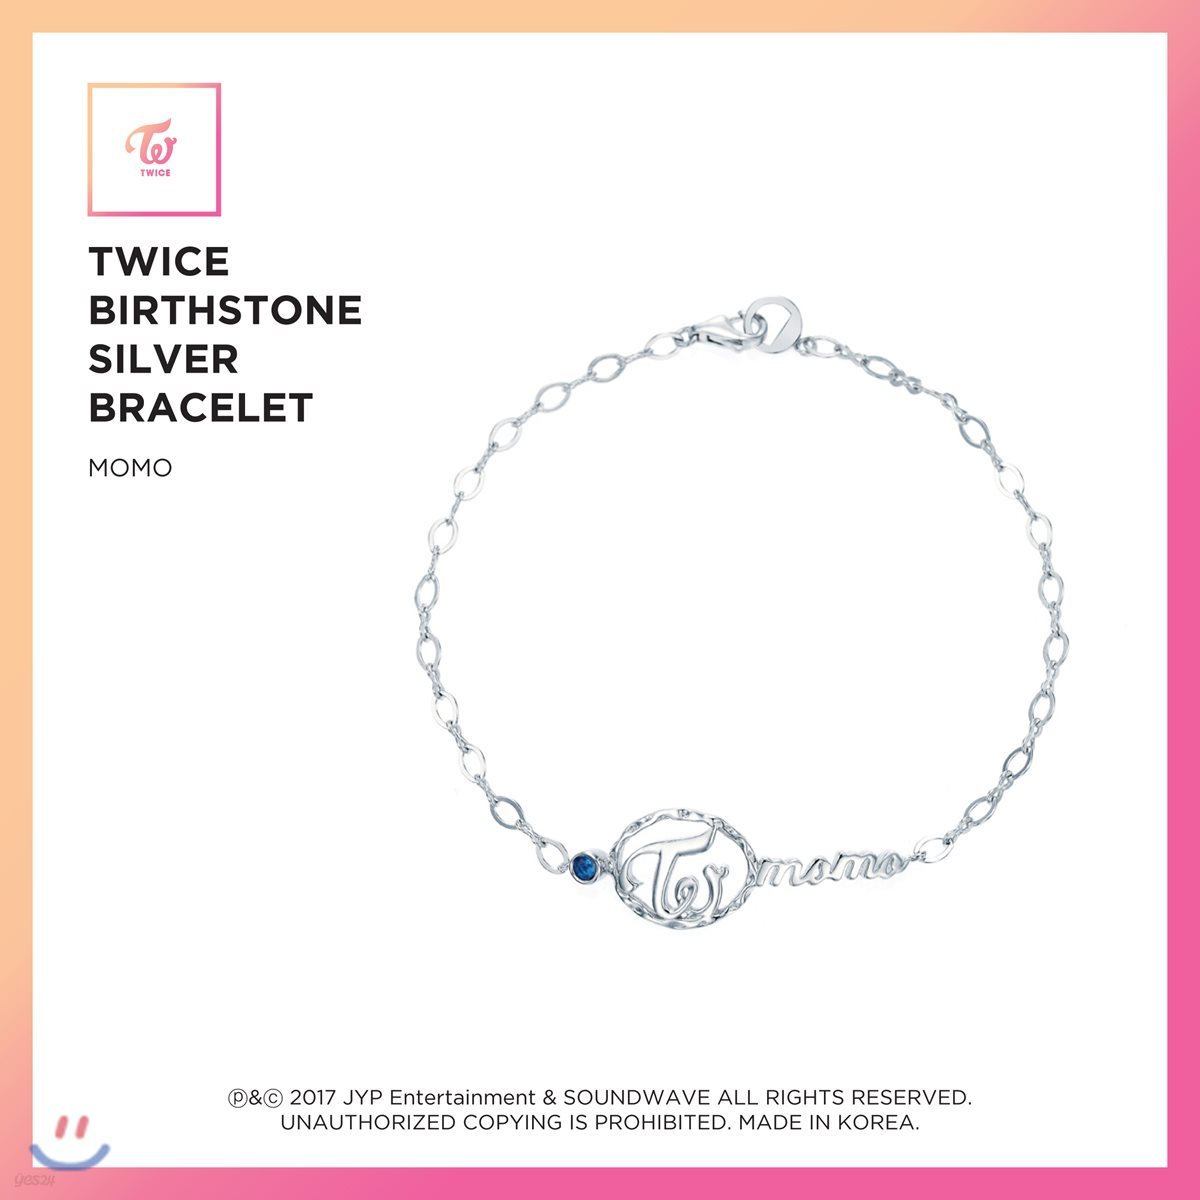 트와이스 (TWICE) - TWICE Birthstone Silver Bracelet [Momo]